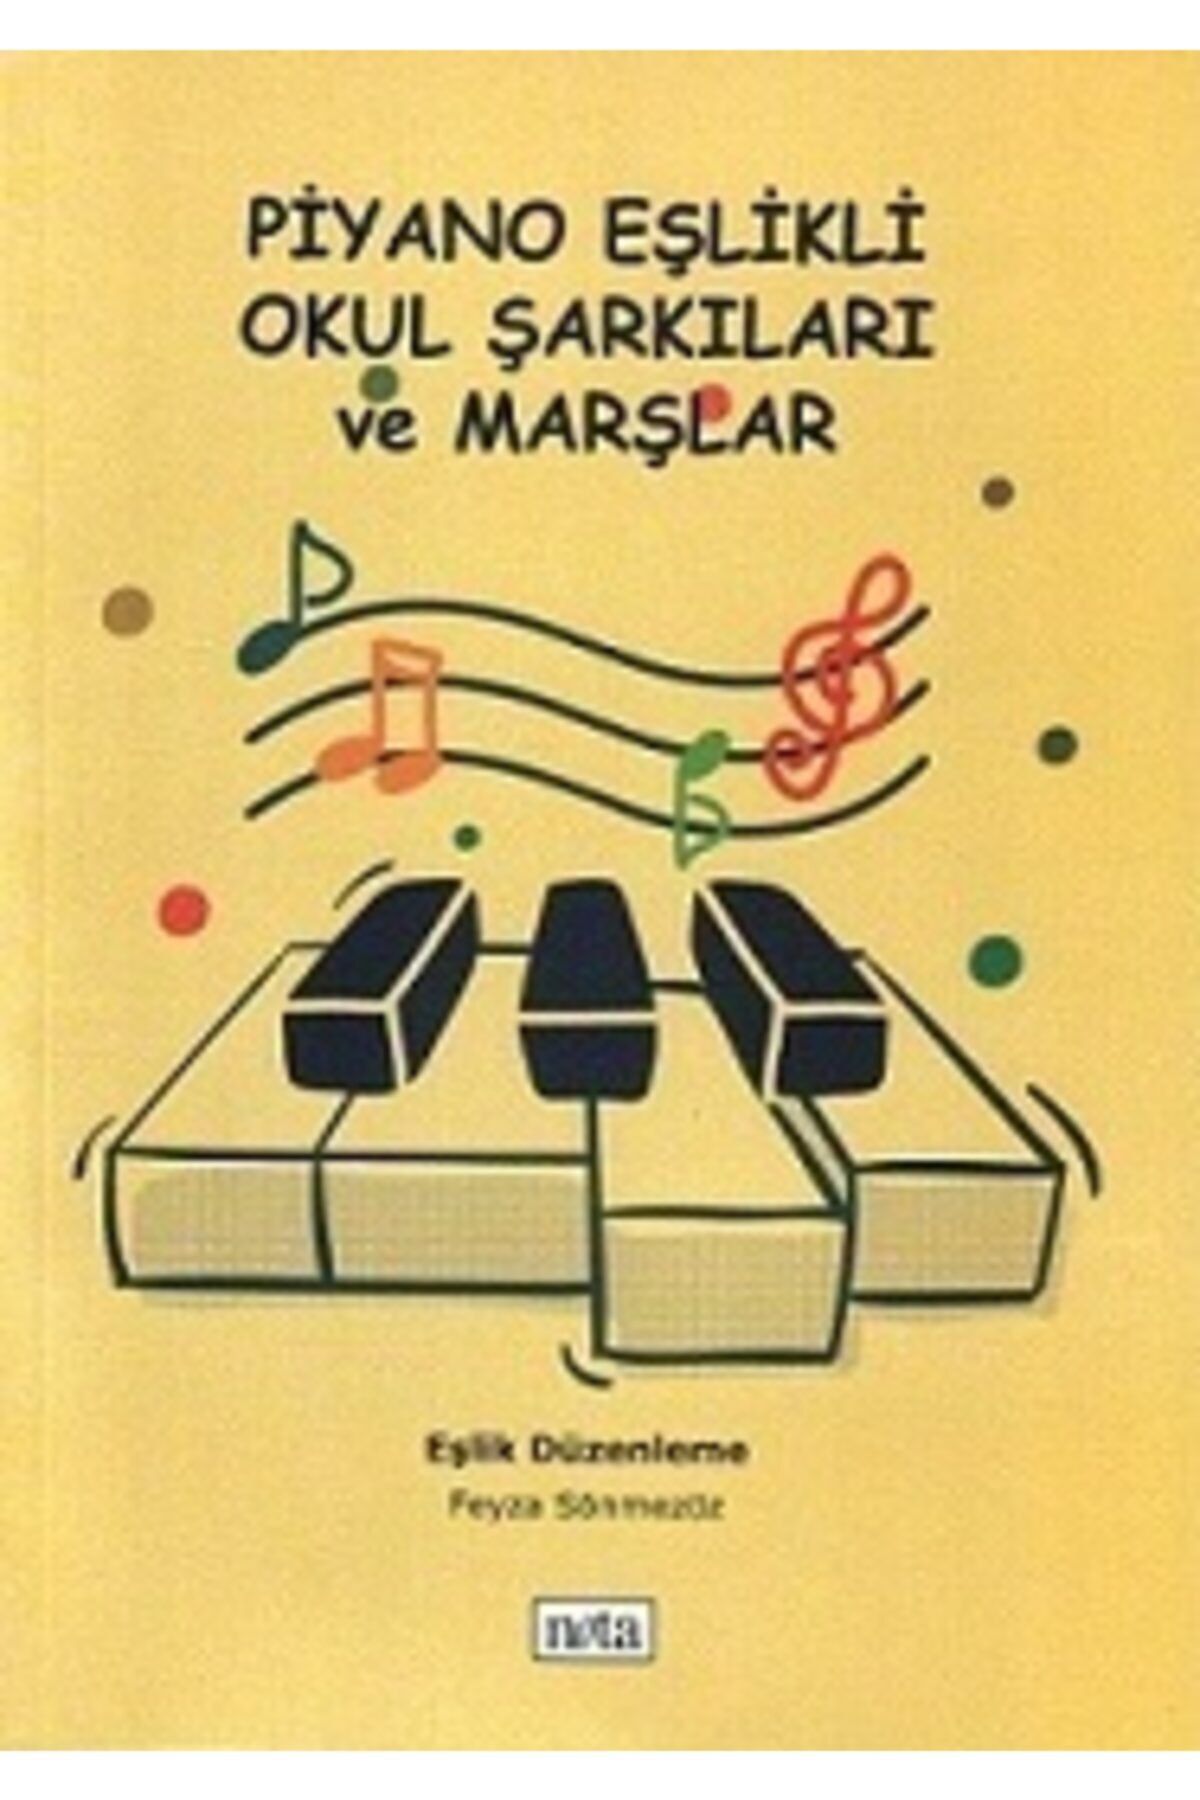 Genel Markalar Piyano Eşlikli Okul Şarkıları Ve Marşlar (feyza Sönmezöz, Nota Yayıncılık)